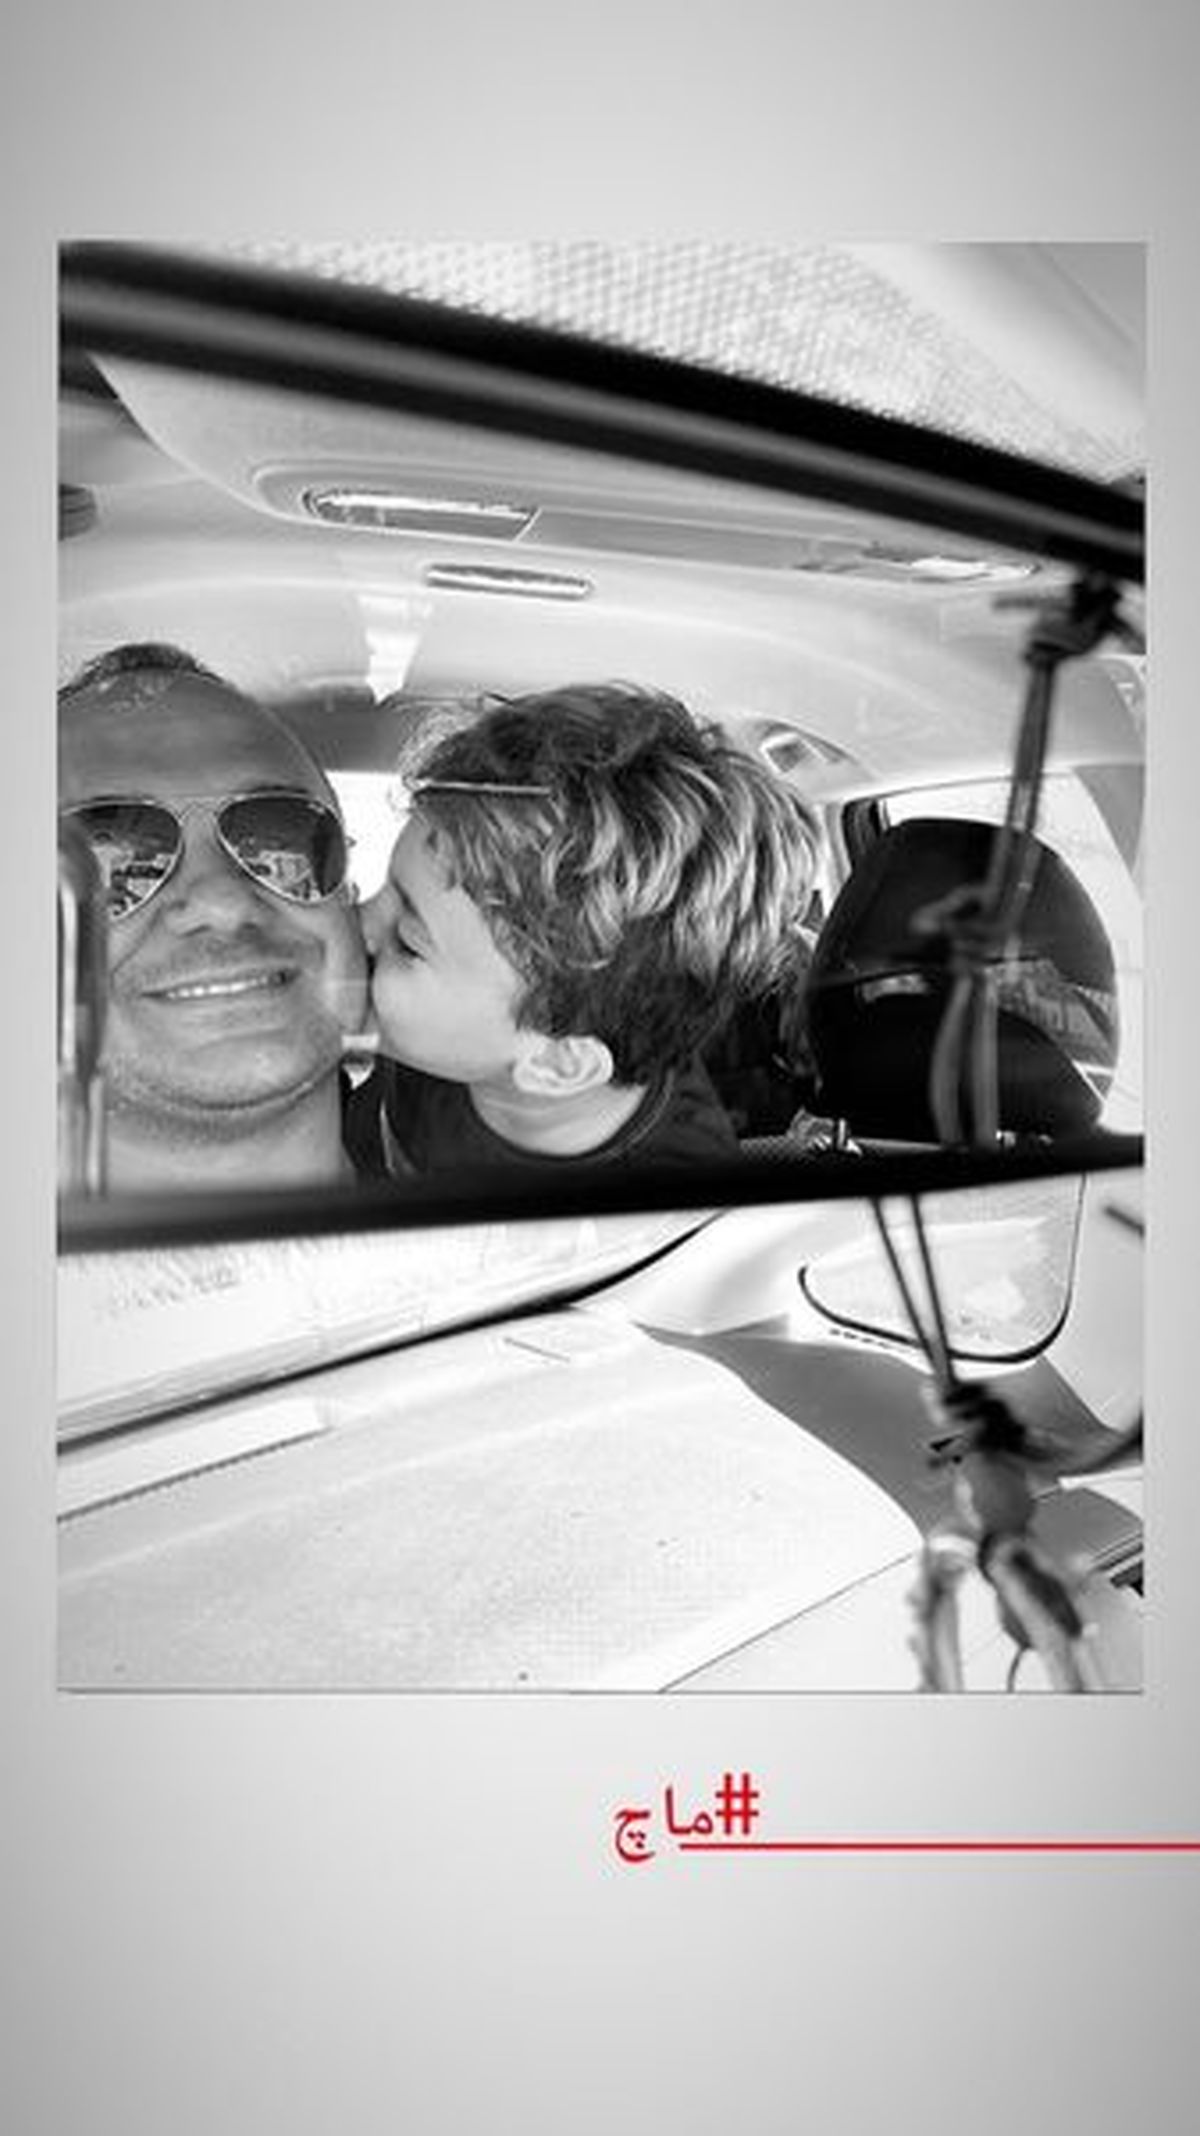 بوسه عجیب احسان کرمی در خودرو لاکچری اش + عکس